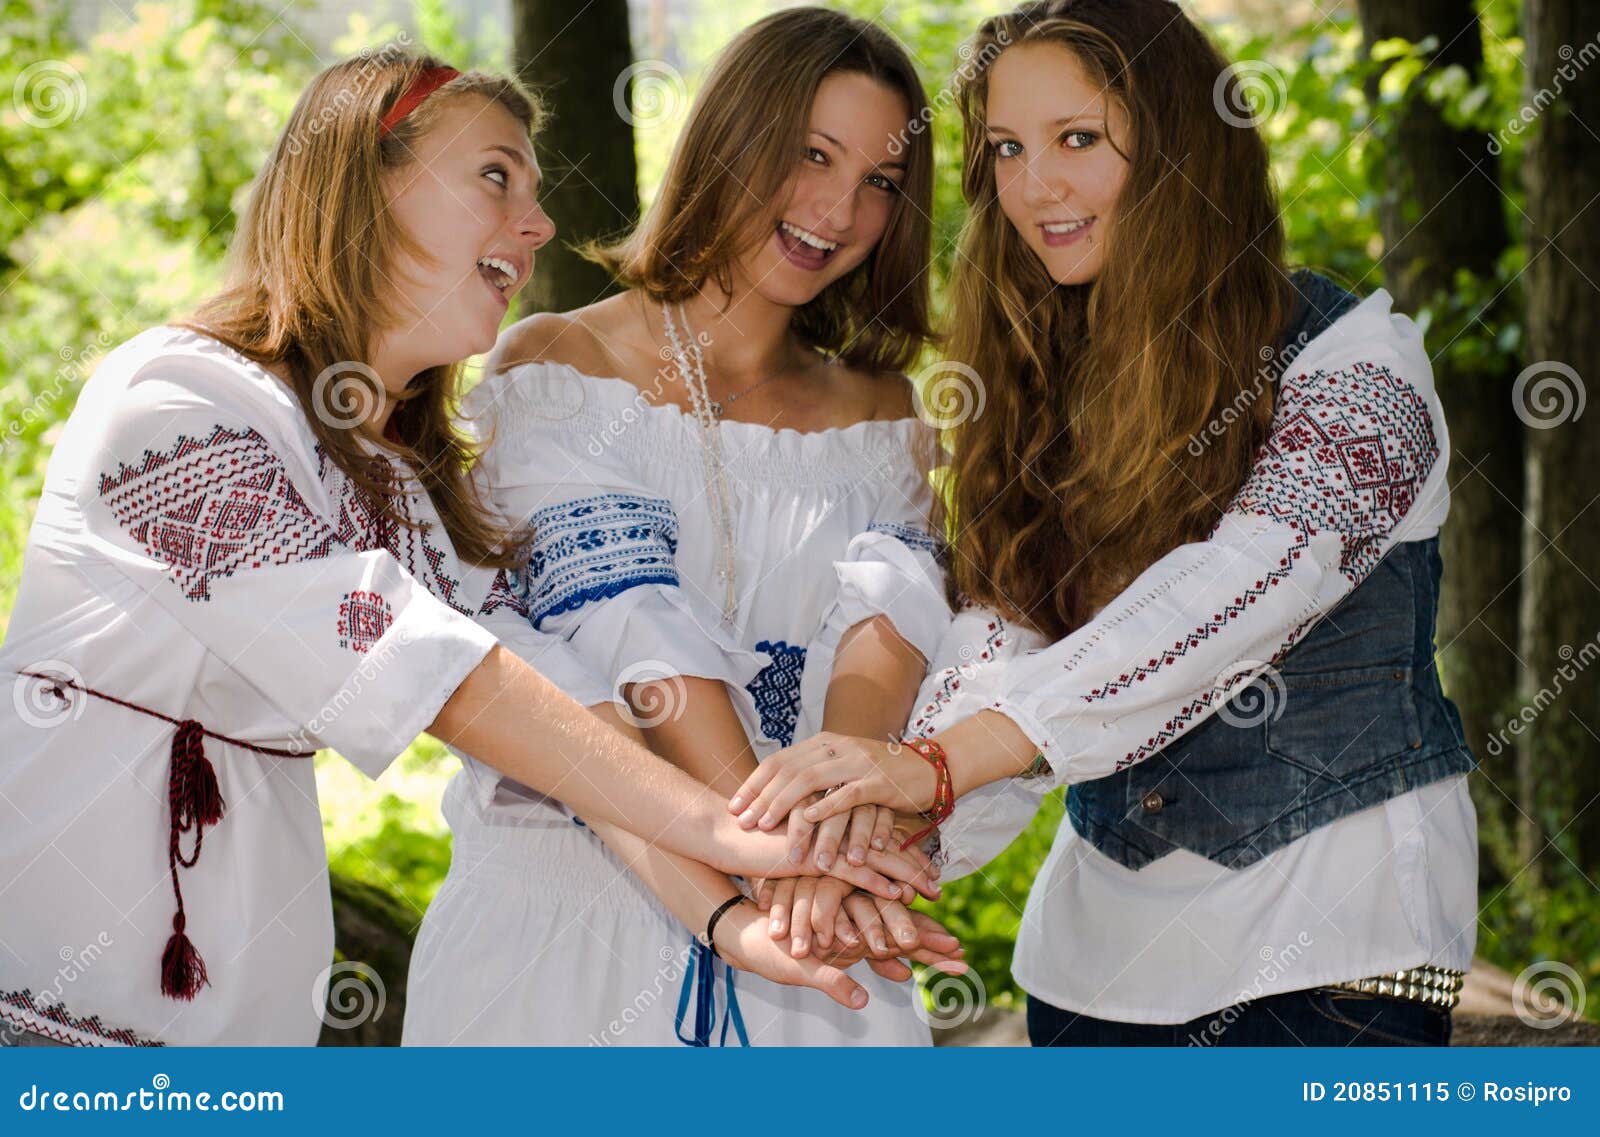 Three Ethno Beauty Teens Having Fun Stock Image I